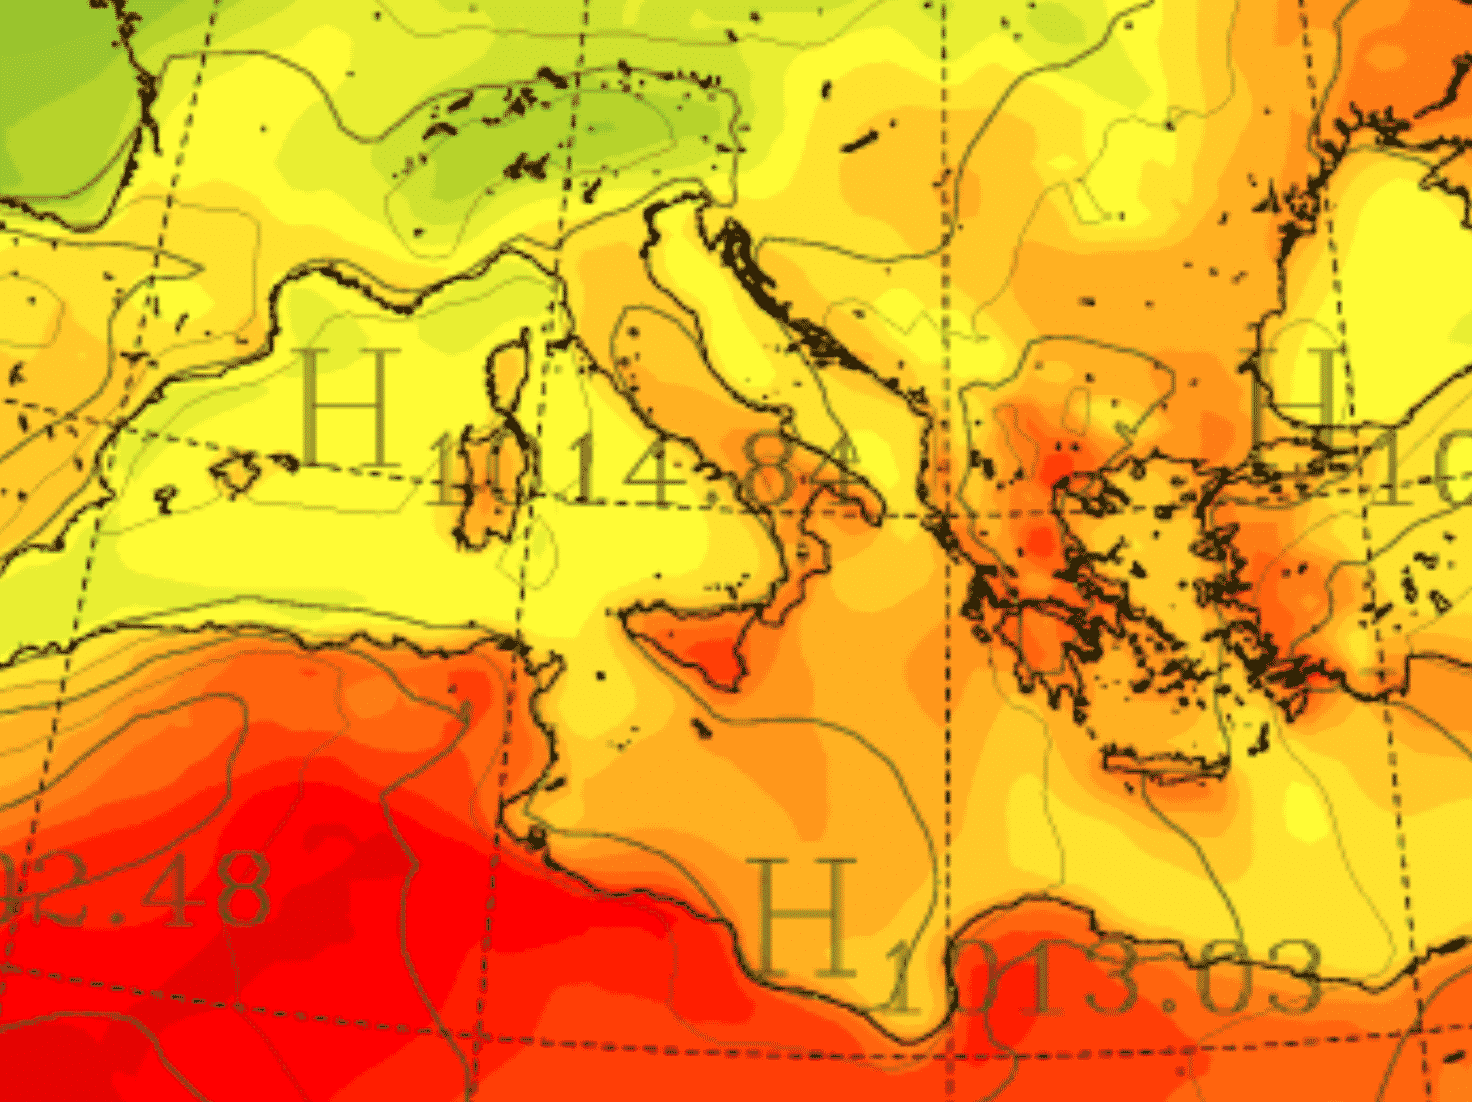 Meteo Sicilia domani, l’ondata di calore piega l’Isola: ancora allerta 3 su 3 e valori oltre 40°C